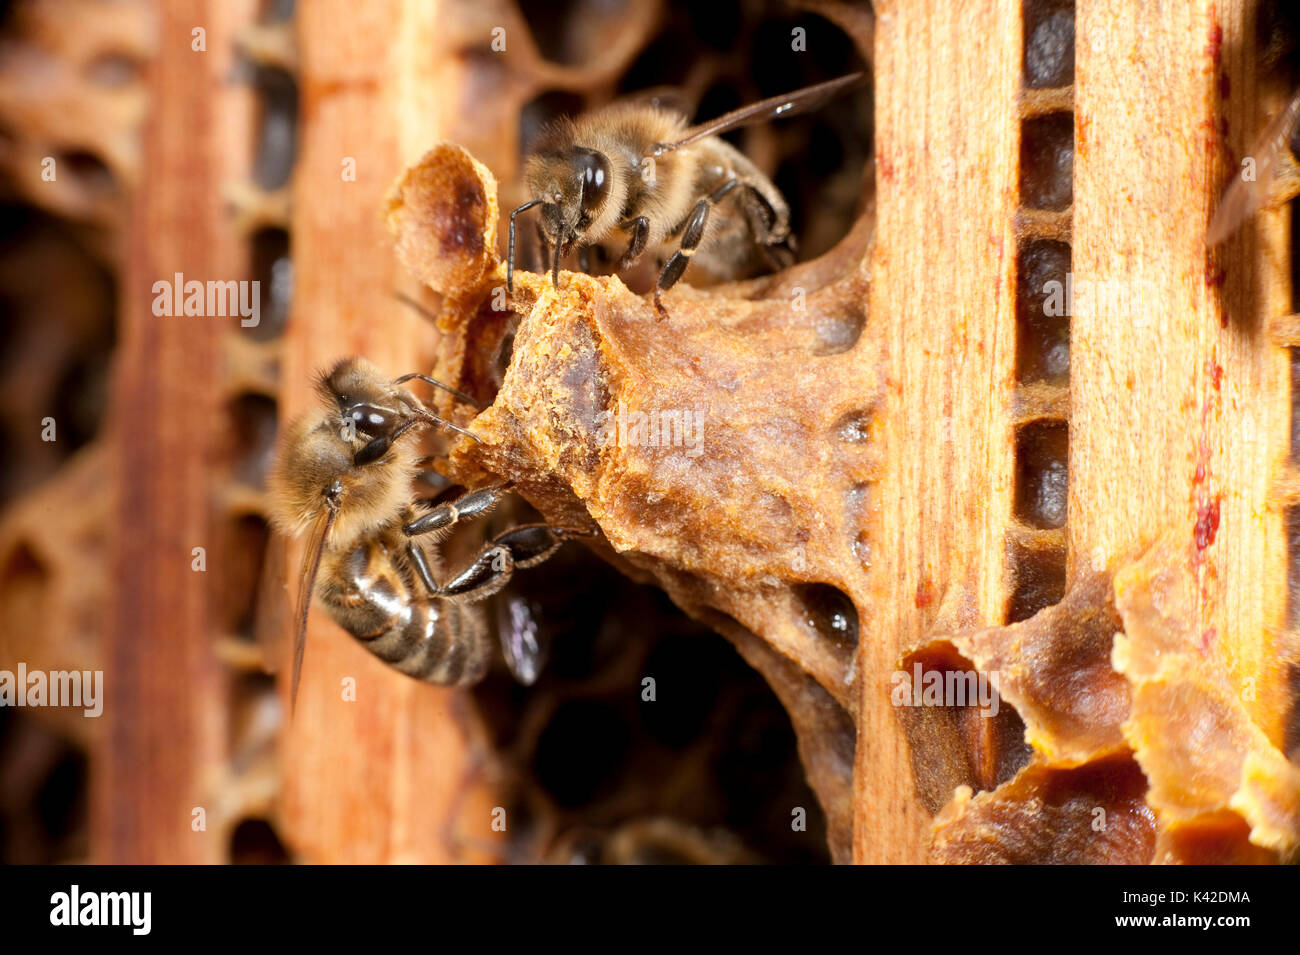 Nouvelle reine abeille, l'éclosion de la cellule de la reine dans la ruche, fréquentée par les travailleurs, Apis mellifera, Kent UK Banque D'Images